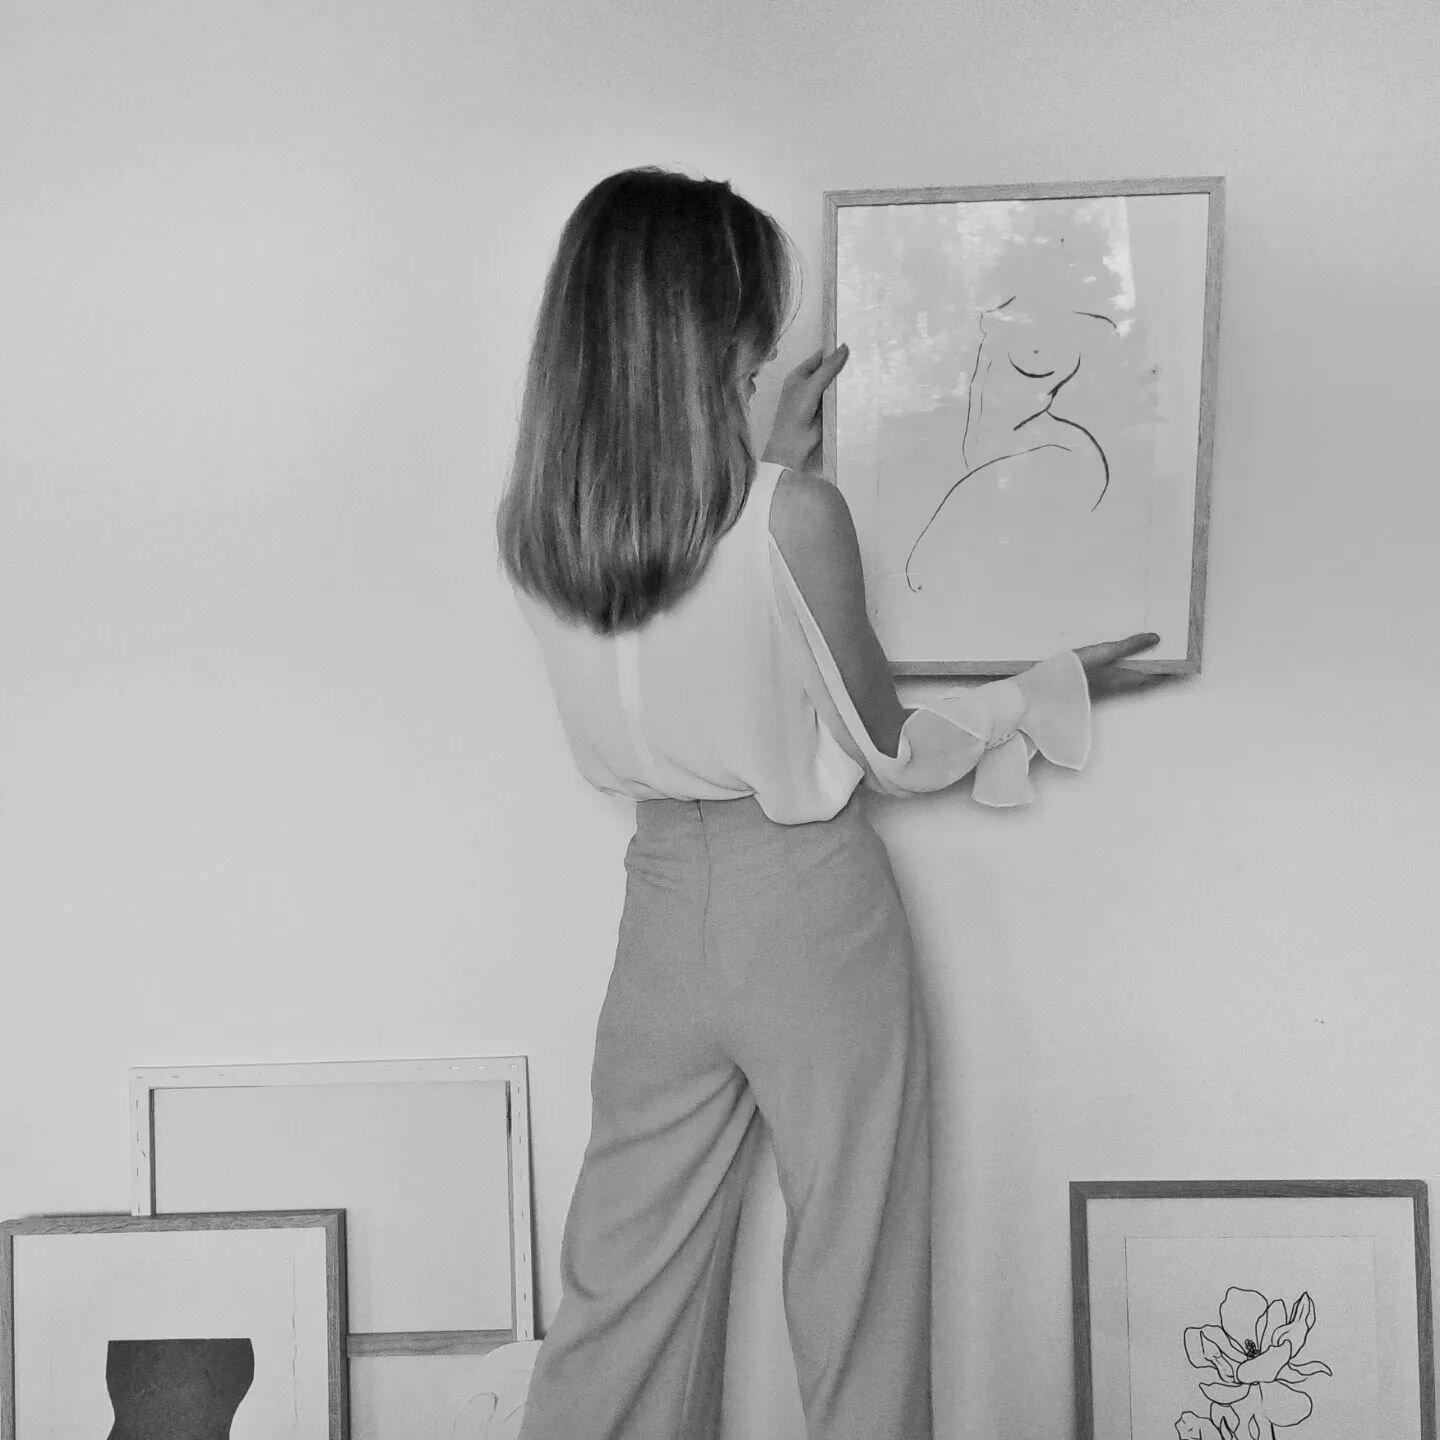 studio vibes 🤍 
.
.
.
#artstudio#minimalistart #minimalart#minimalartist#minimalistinterior #femaleartist#womendrawingwomen #womanartist #artstudiospace #artiststudiospace #artiststudio#monochromeart #myneutralhome #neutralaesthetics #minimalistaest